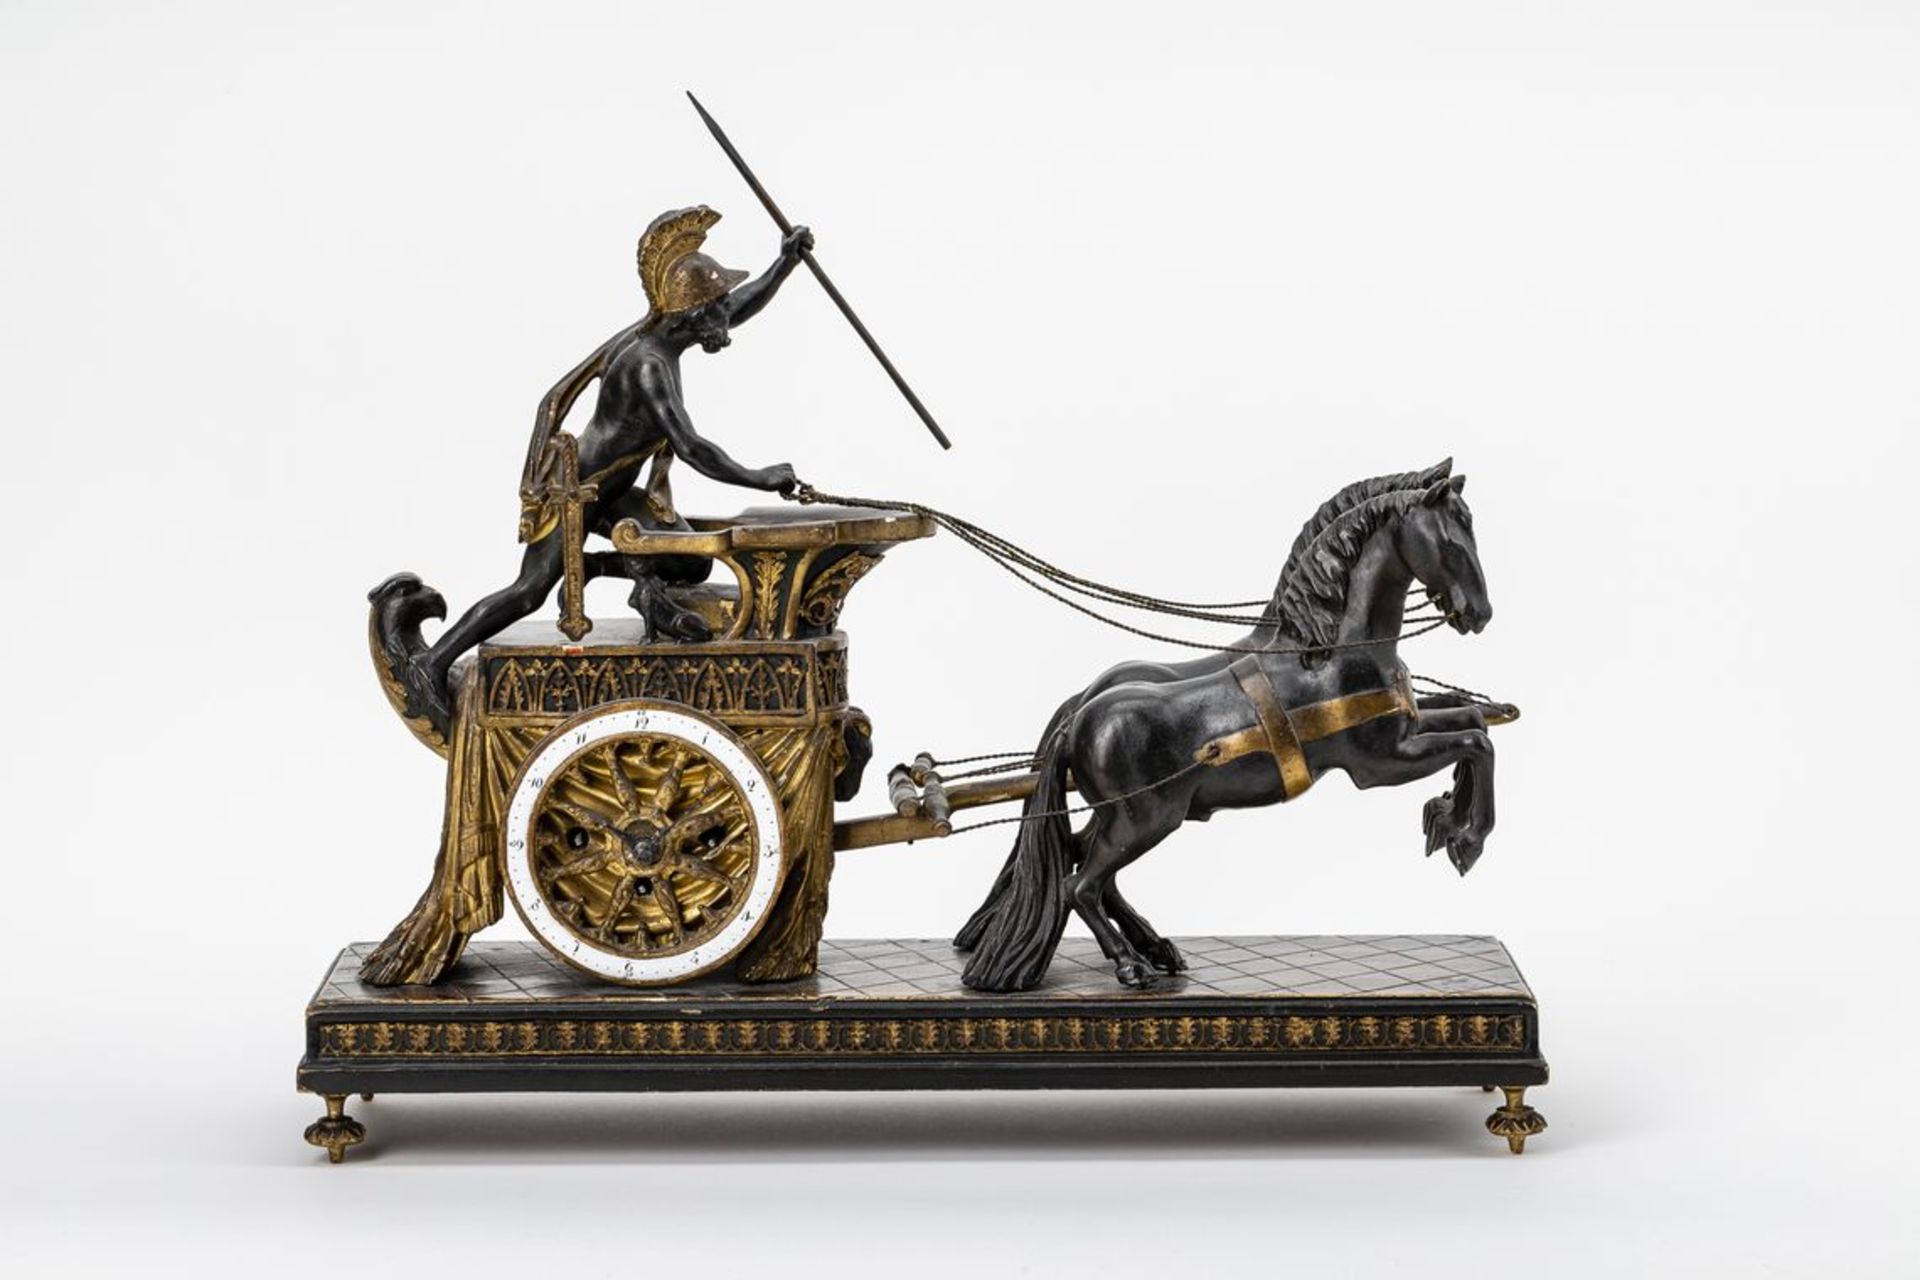 KonsoluhrRömischer Streitwagen als Uhrengehäuse, darauf unbekleideter römischer Kämpfer, die